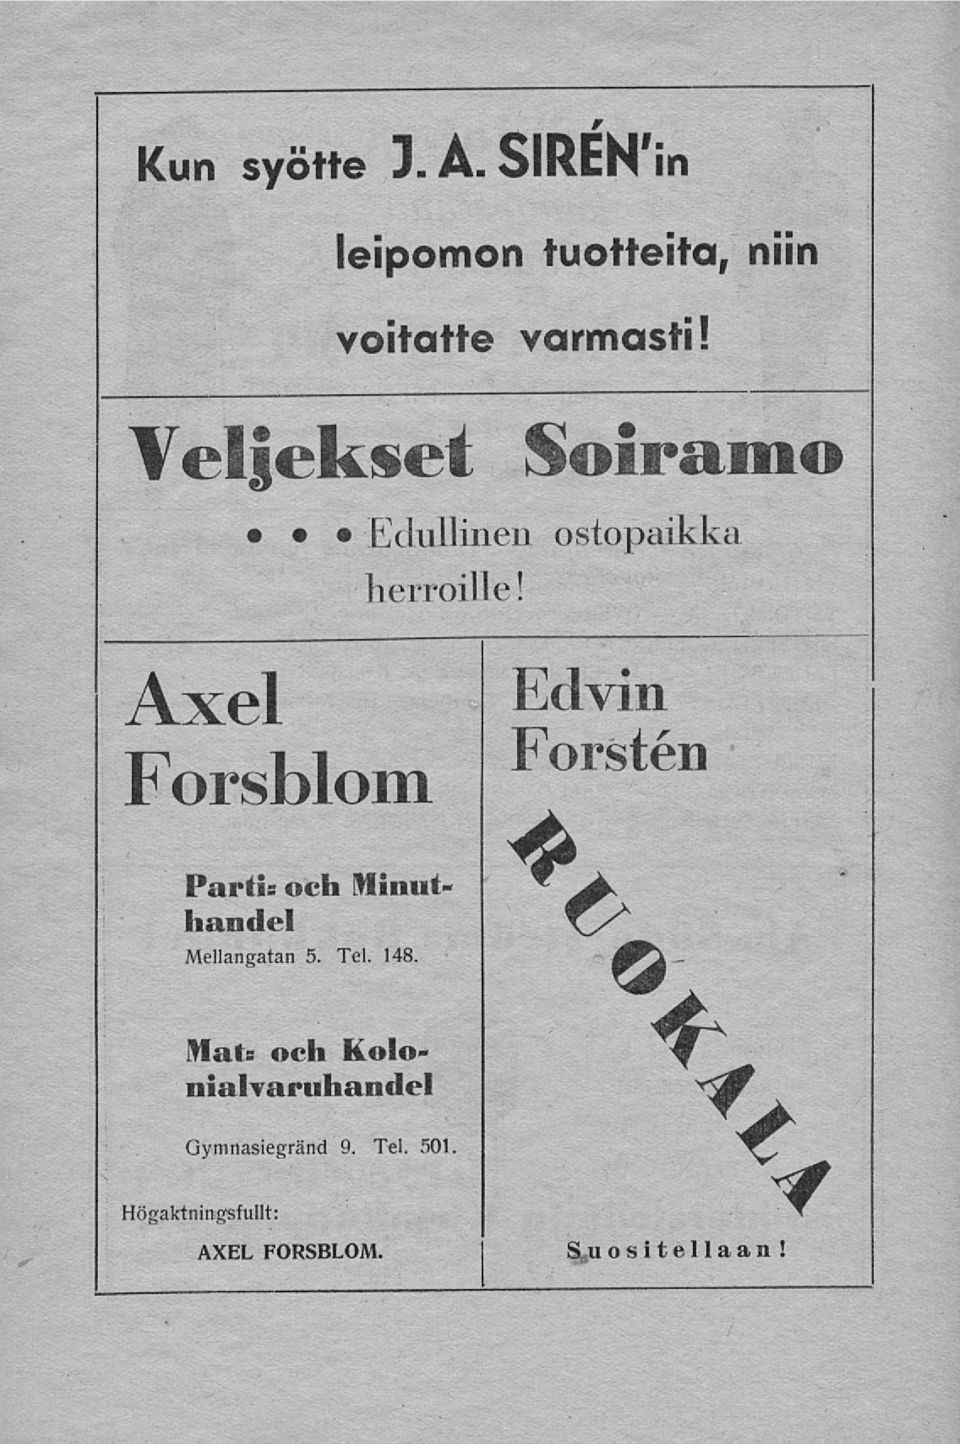 Axel Forsblom Försten Edvin Partis och Minuthandel Mellangatan 5. Tel. 148.